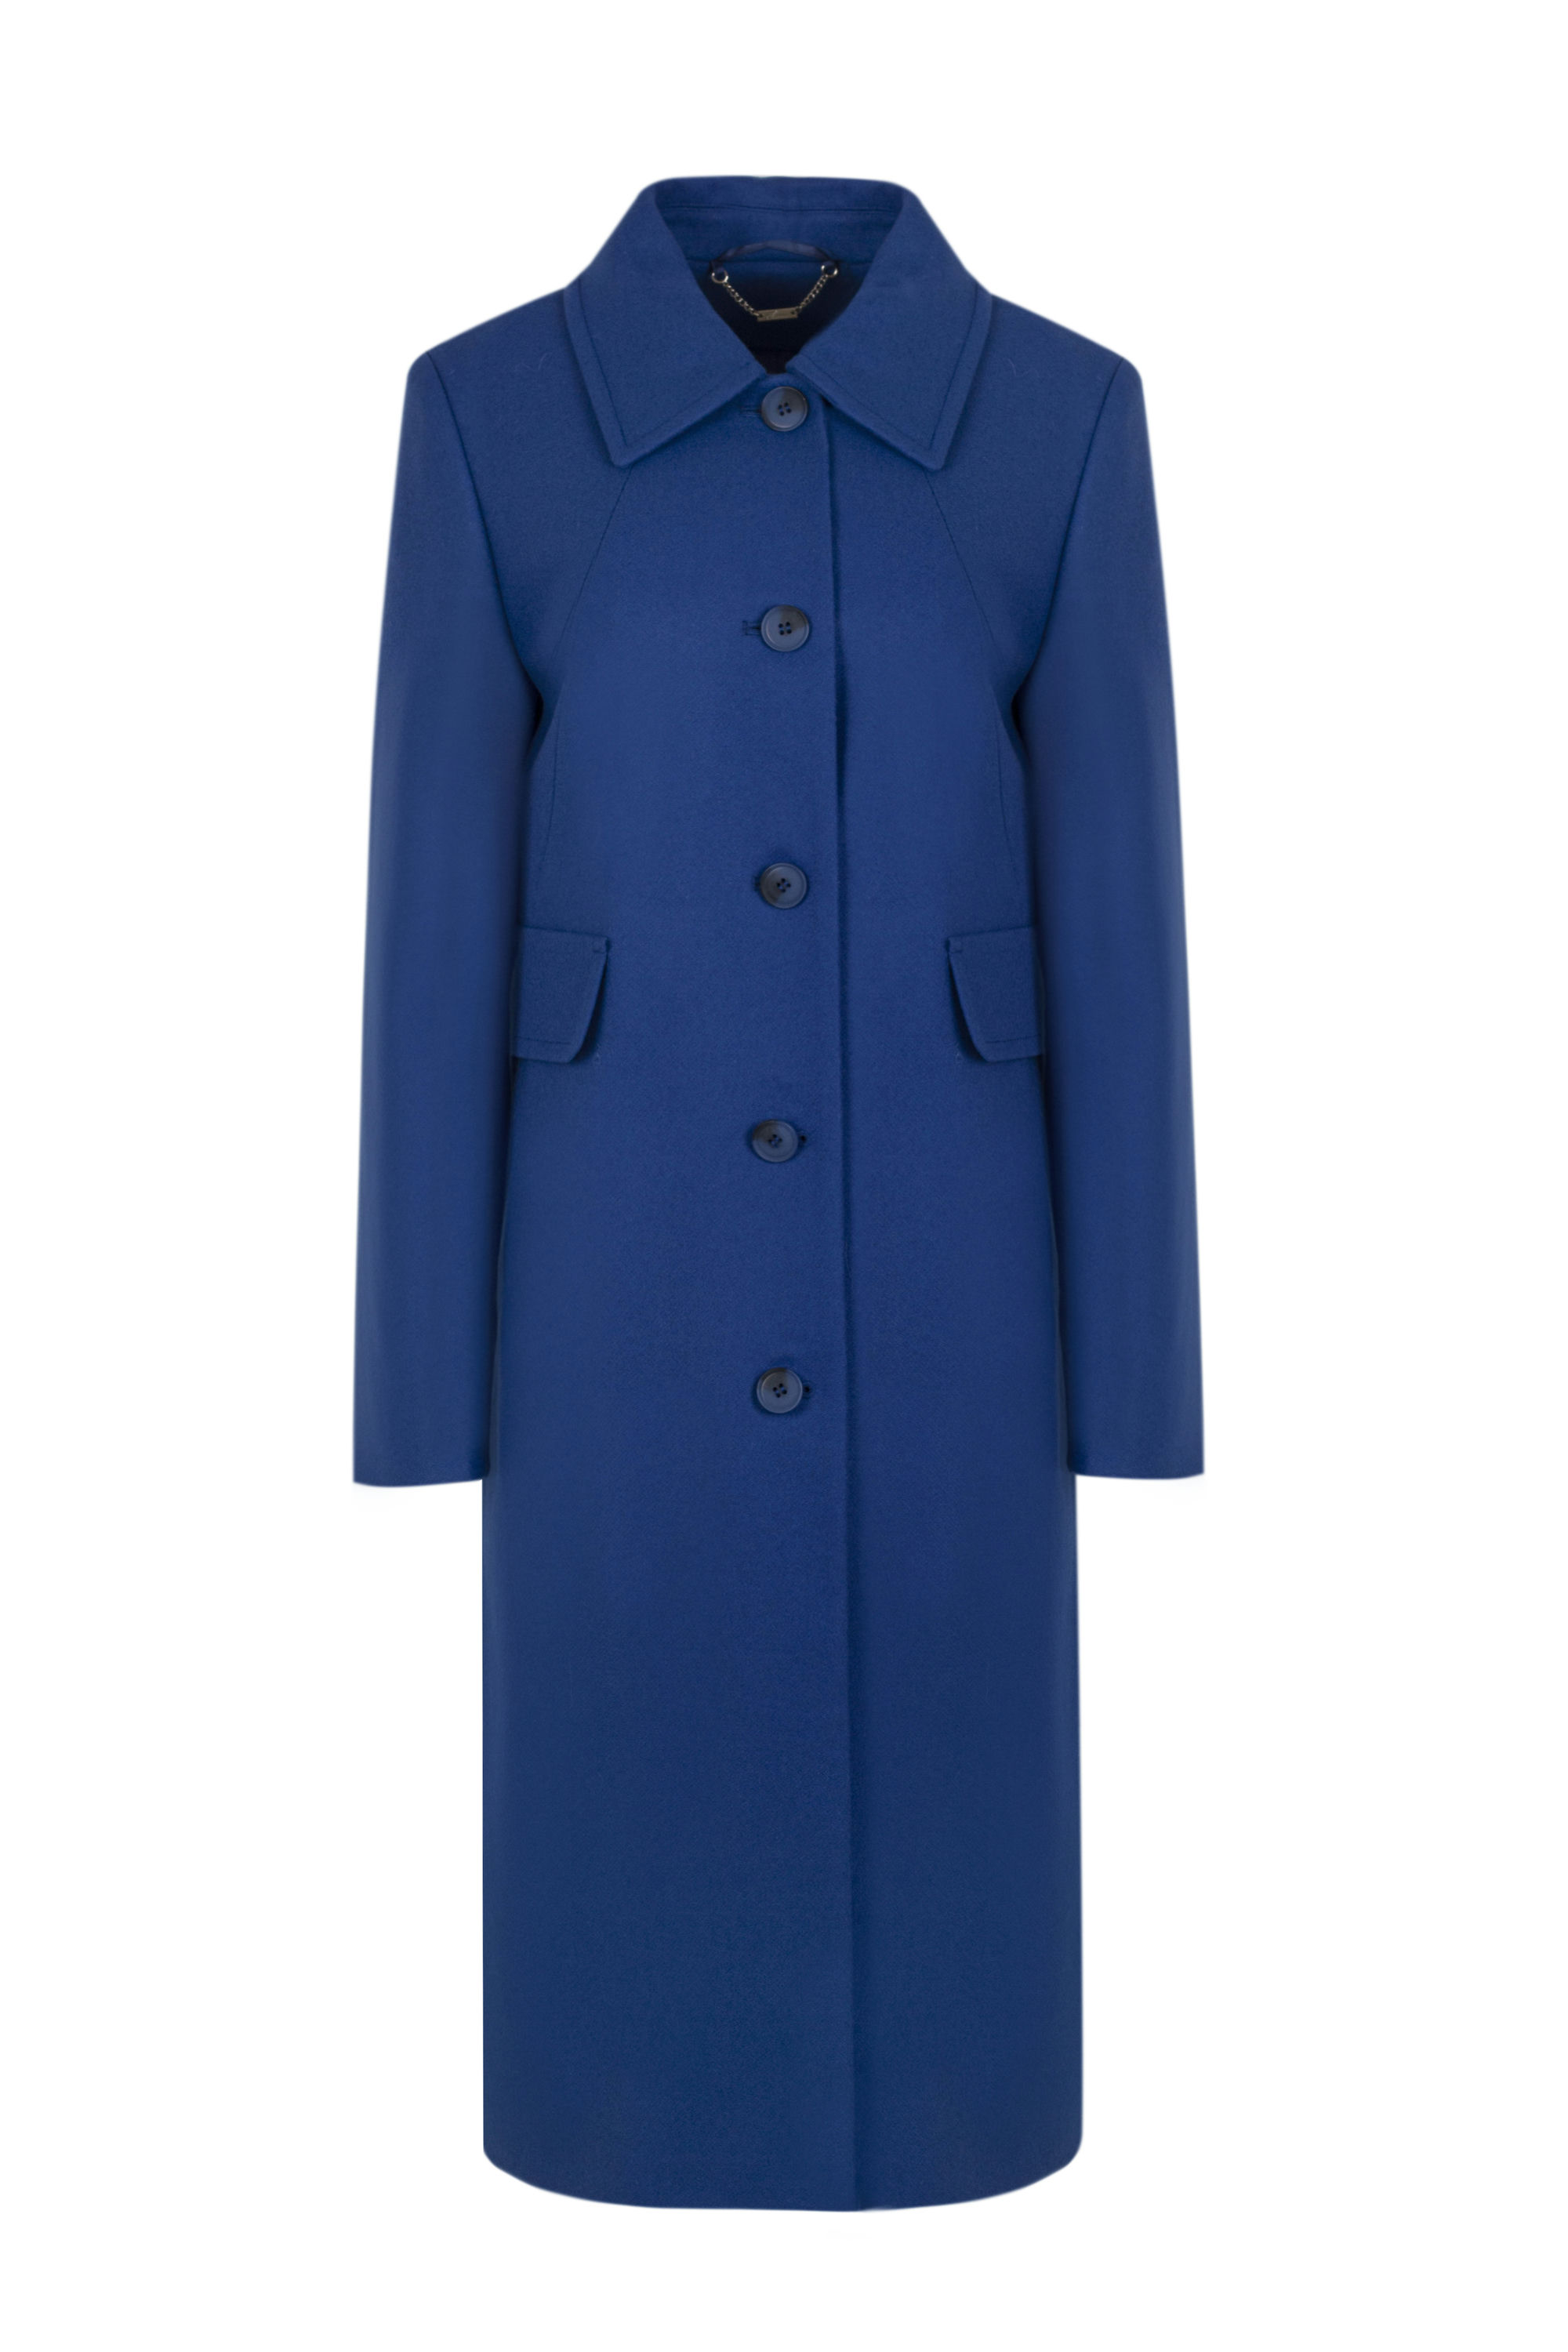 Пальто женское демисезонное 1-314. Фото 1.